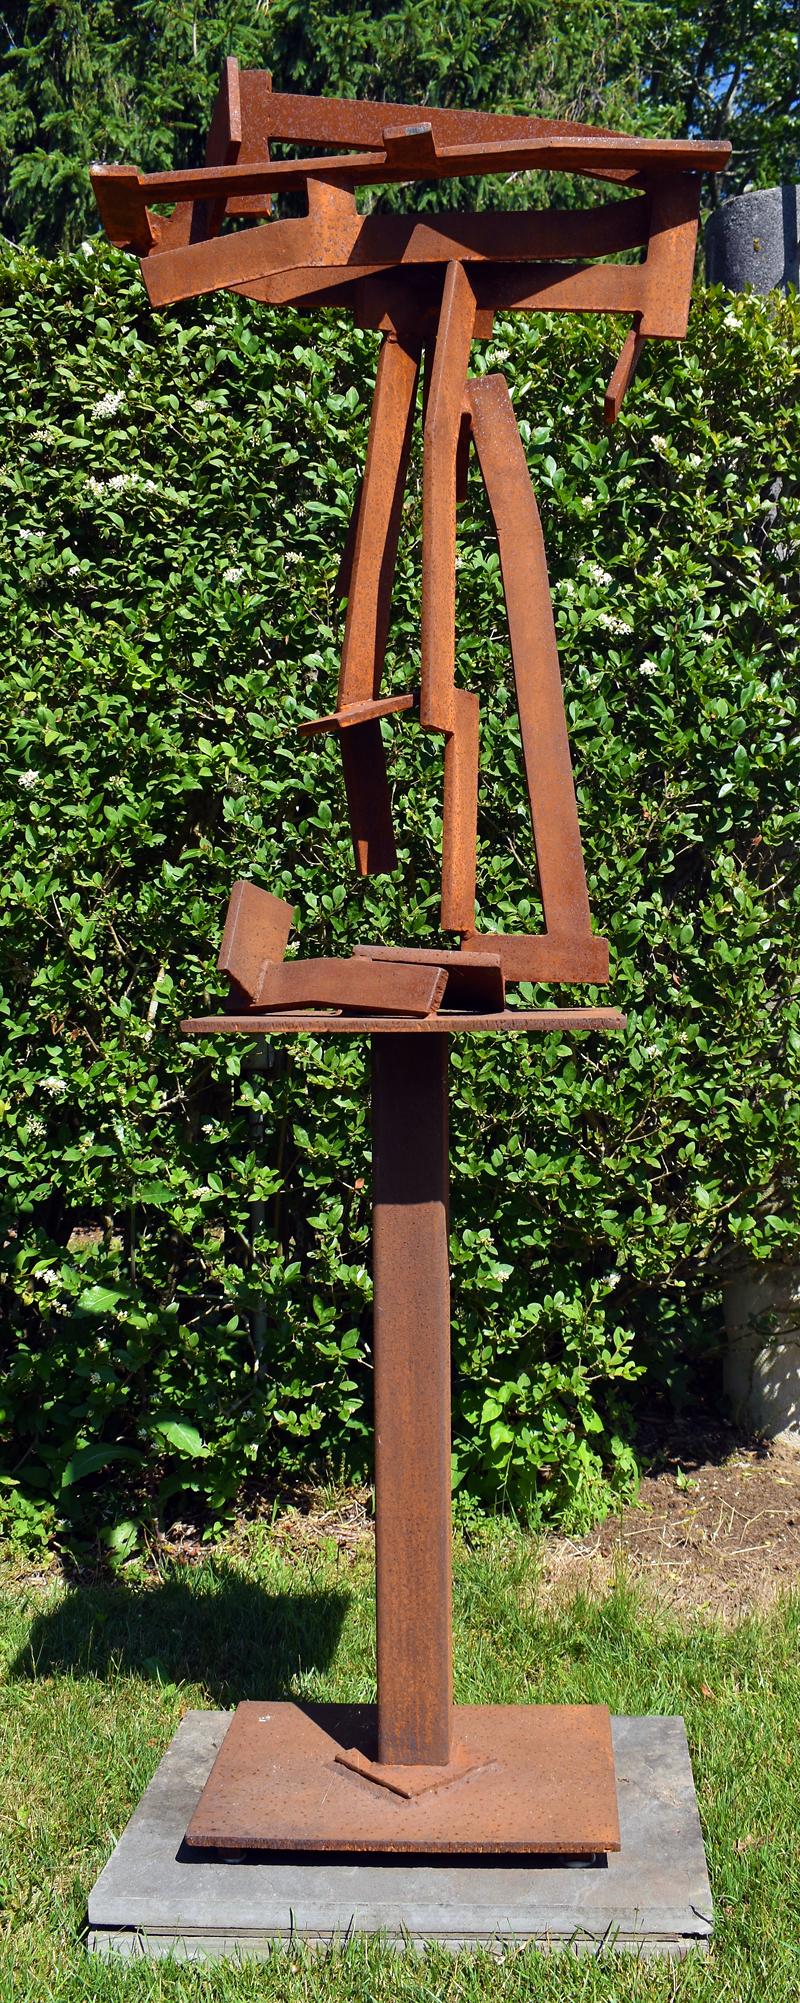 "Red Ryder" par Joel Perlman
Sculpture métallique abstraite de grande taille en acier

Joel Steele crée des sculptures complexes en acier, en bronze et en aluminium depuis le début des années 1970. Alors que le minimalisme était le style prédominant